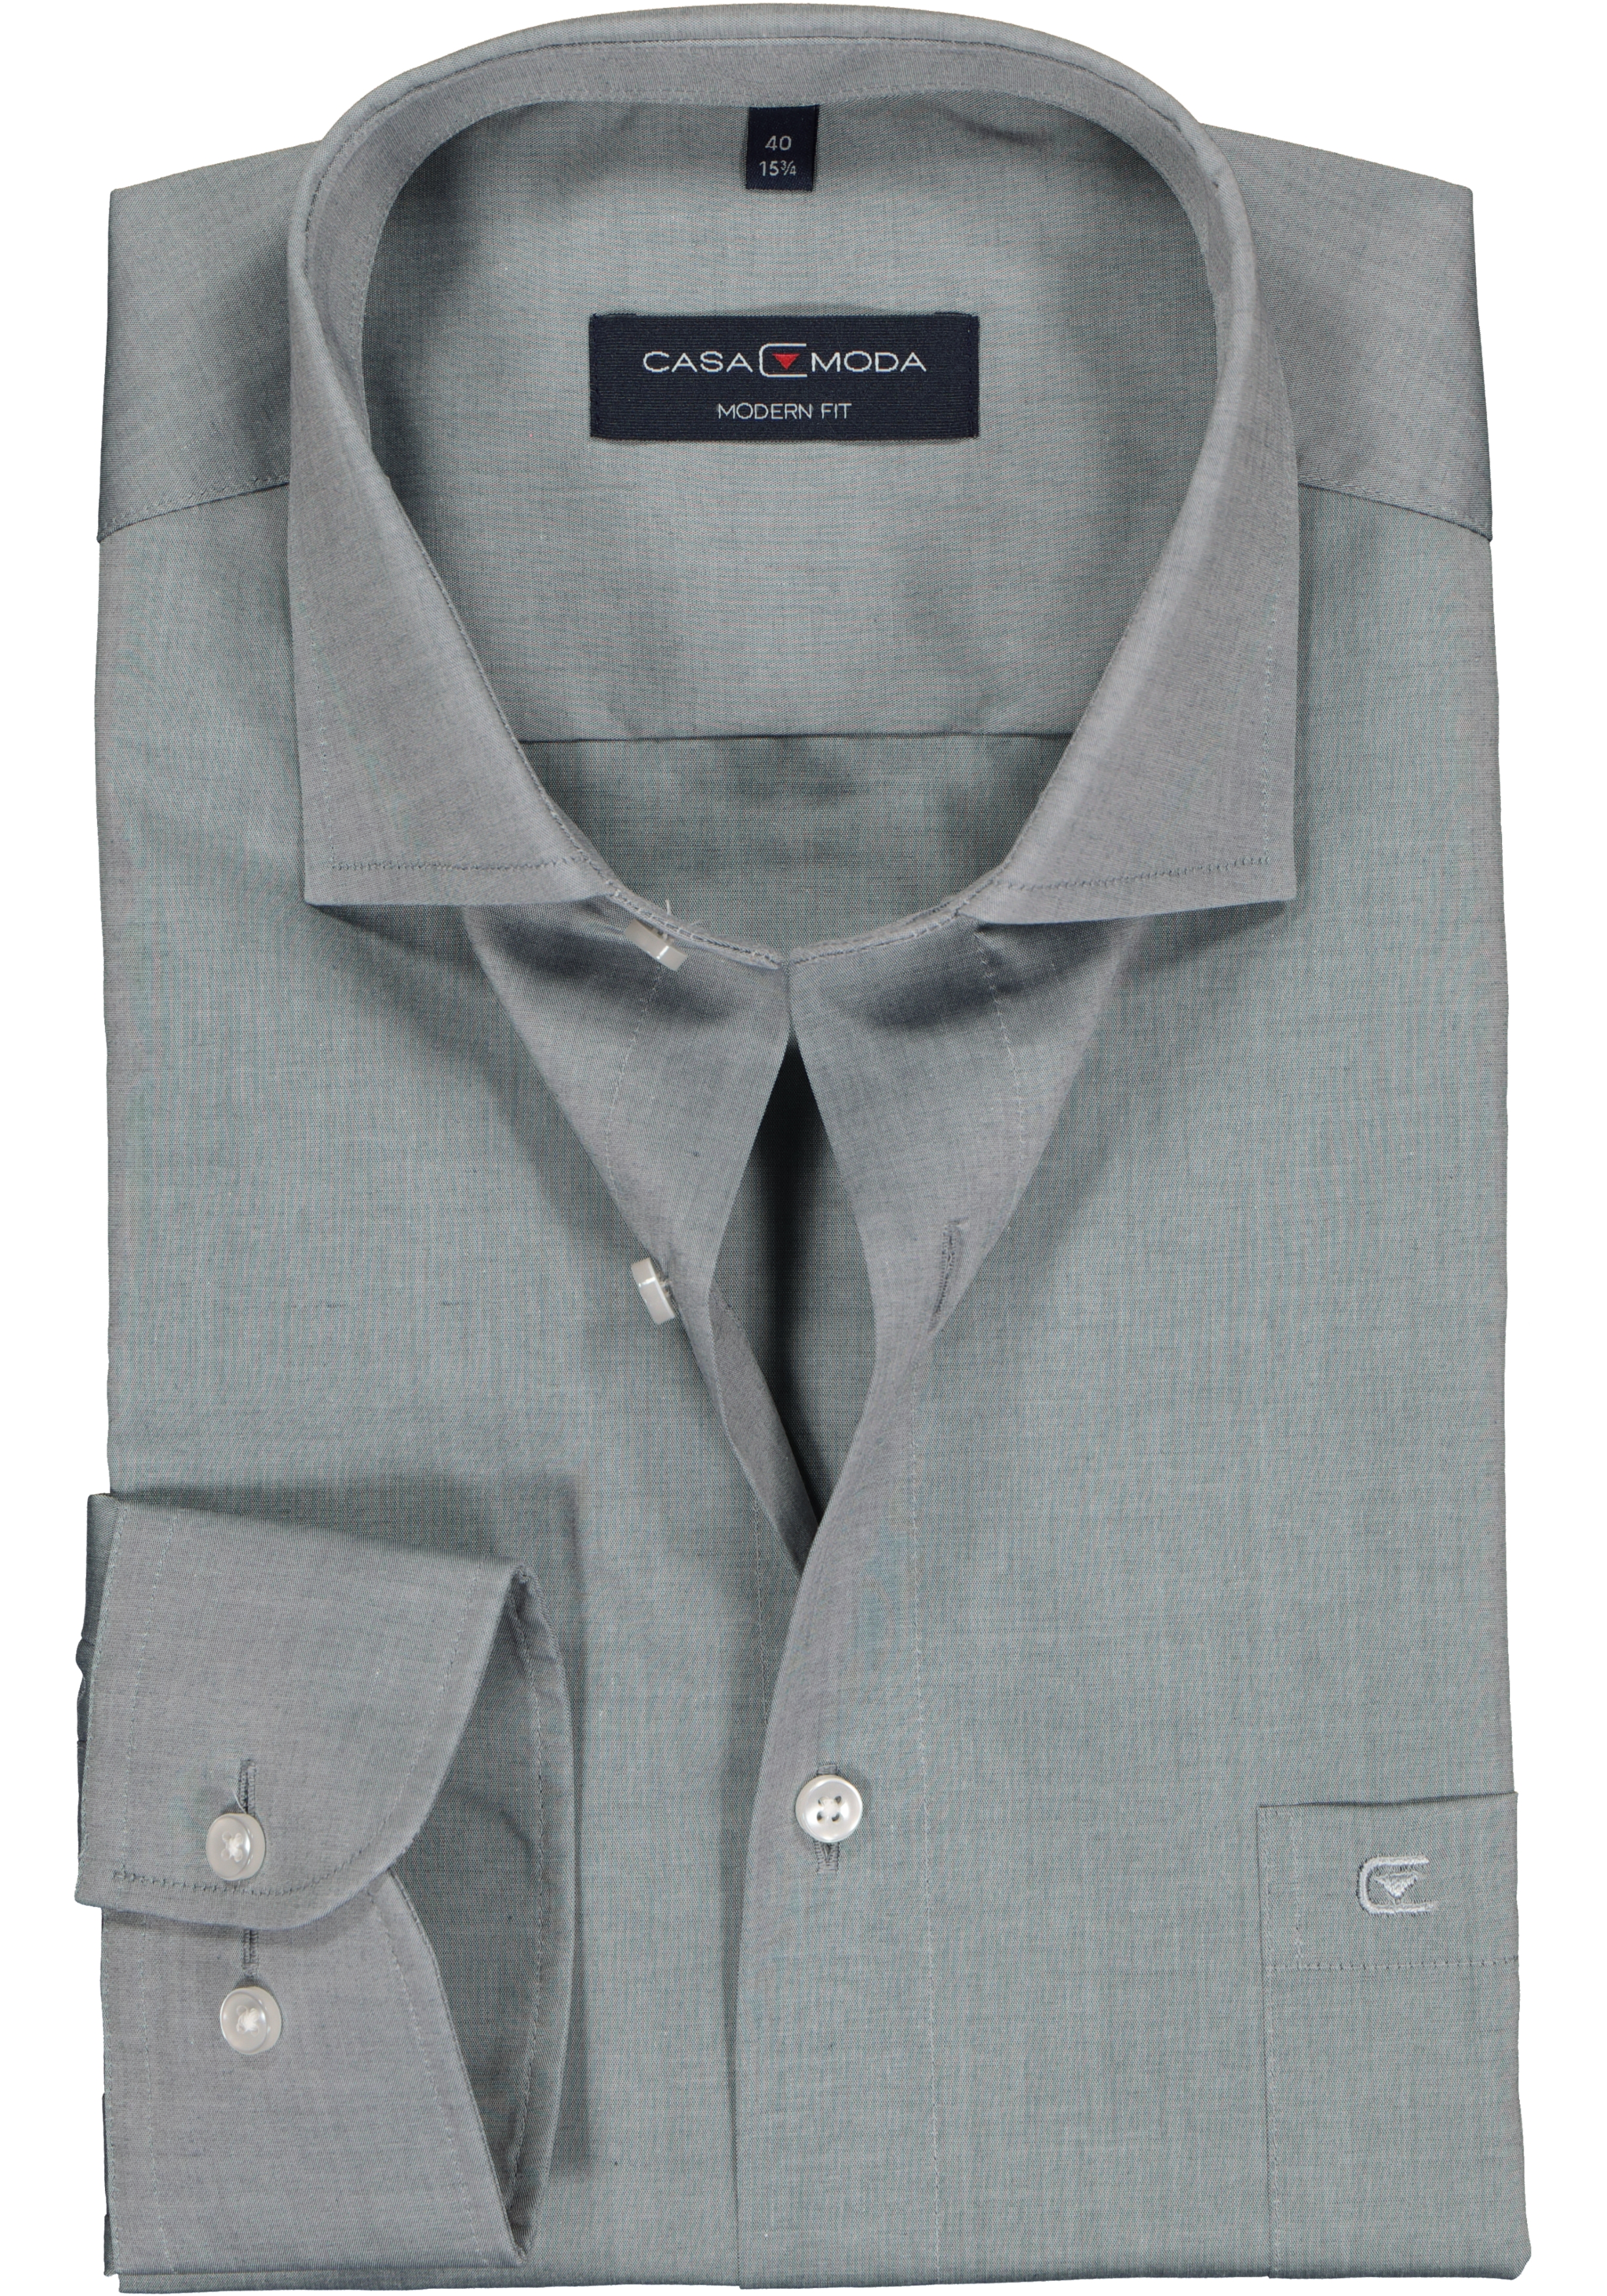 CASA MODA modern fit overhemd, mouwlengte 72 cm, grijs 